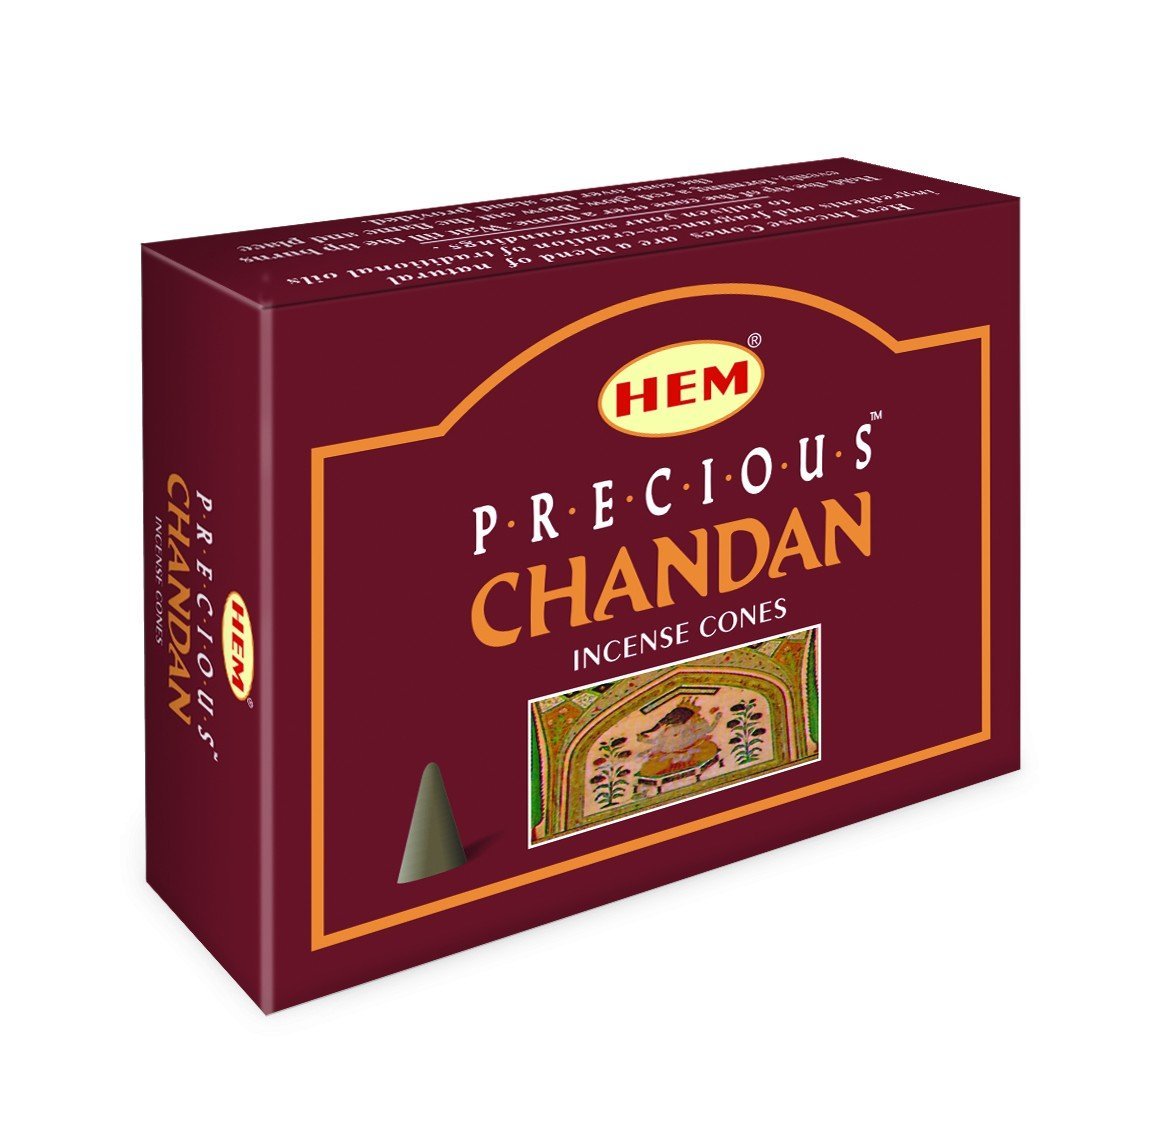 HEM - Precious Chandan - 120 Incense Cones